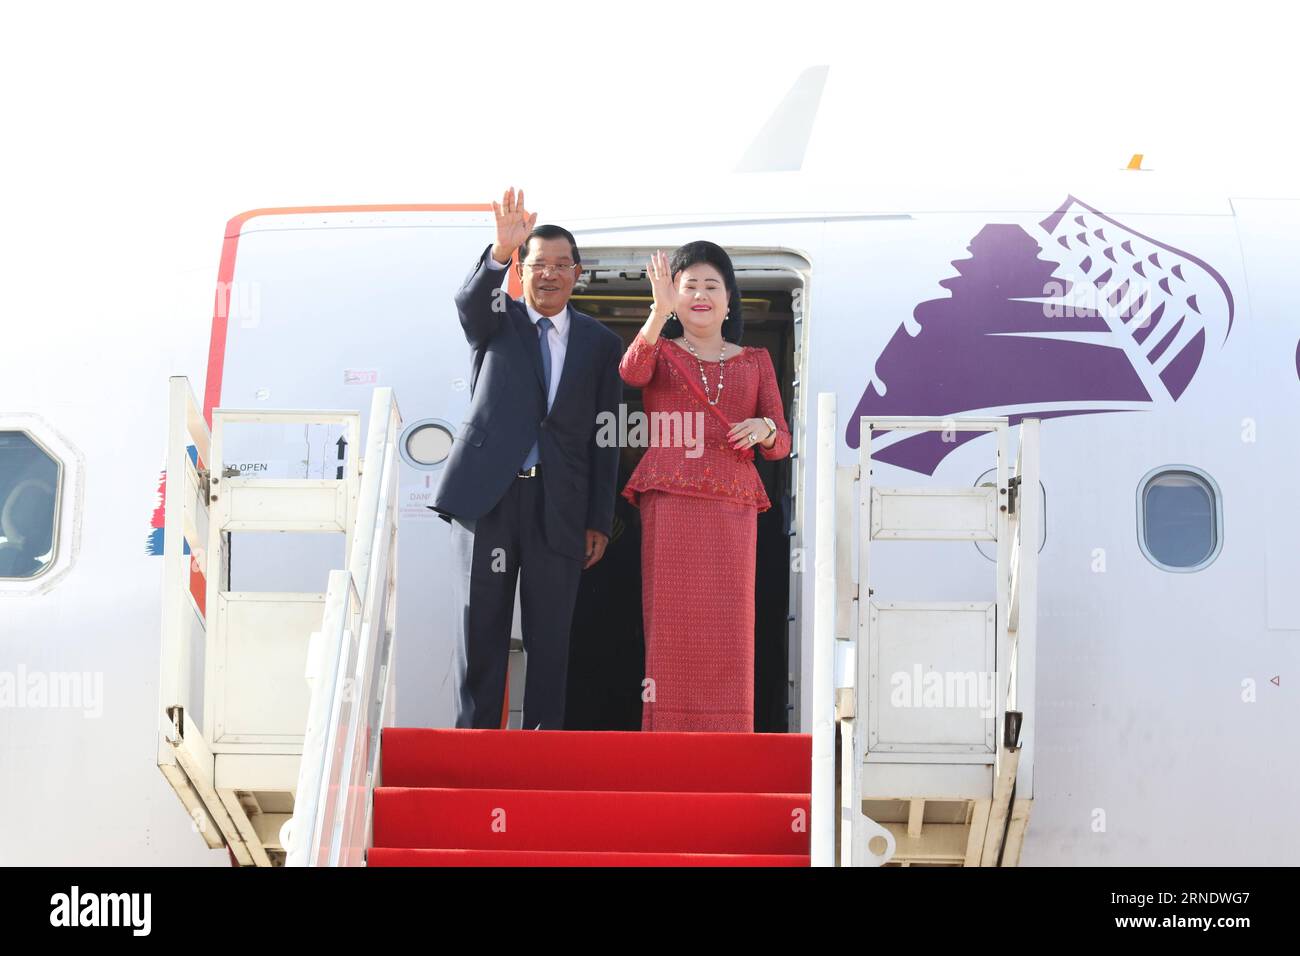 (160601) -- PHNOM PENH, le 1 juin 2016 -- le Premier ministre cambodgien Hun Sen et son épouse Bun Rany font un bond aux gens depuis un avion à Phnom Penh le 1 juin 2016. Hun Sen s'est rendu mercredi en Malaisie pour un forum économique mondial et une visite officielle. (Zhf) CAMBODGE-PHNOM PENH-PM-MALAISIE Sovannara PUBLICATIONxNOTxINxCHN Banque D'Images